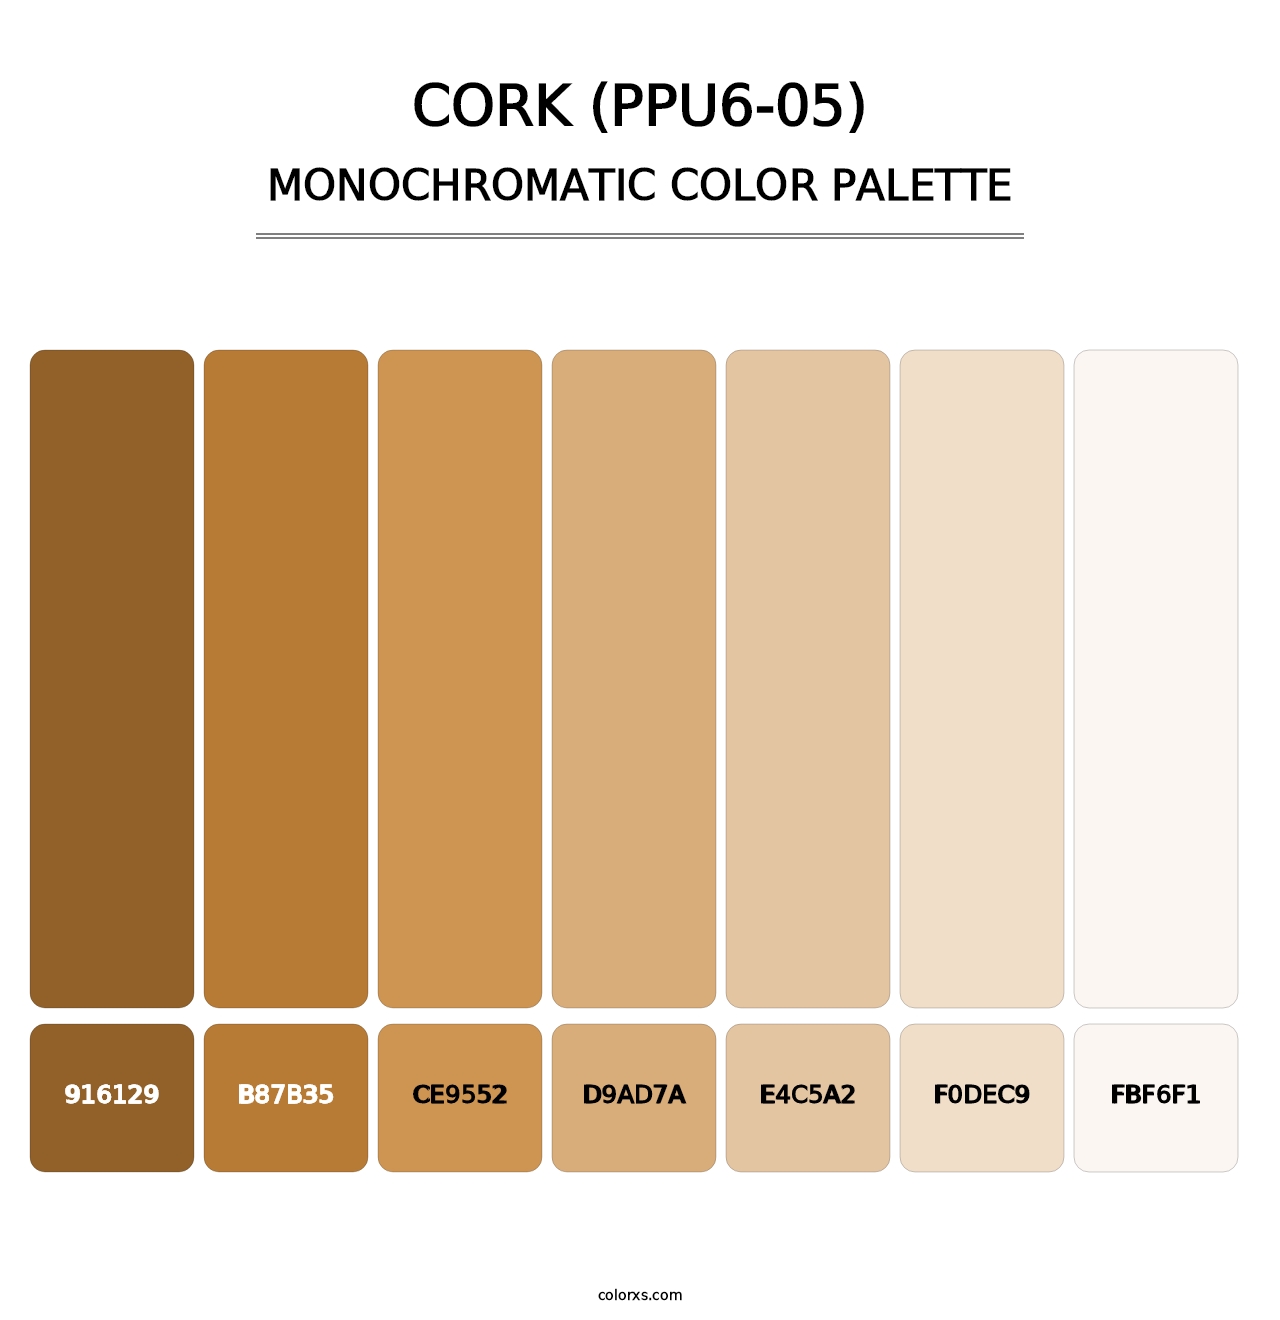 Cork (PPU6-05) - Monochromatic Color Palette